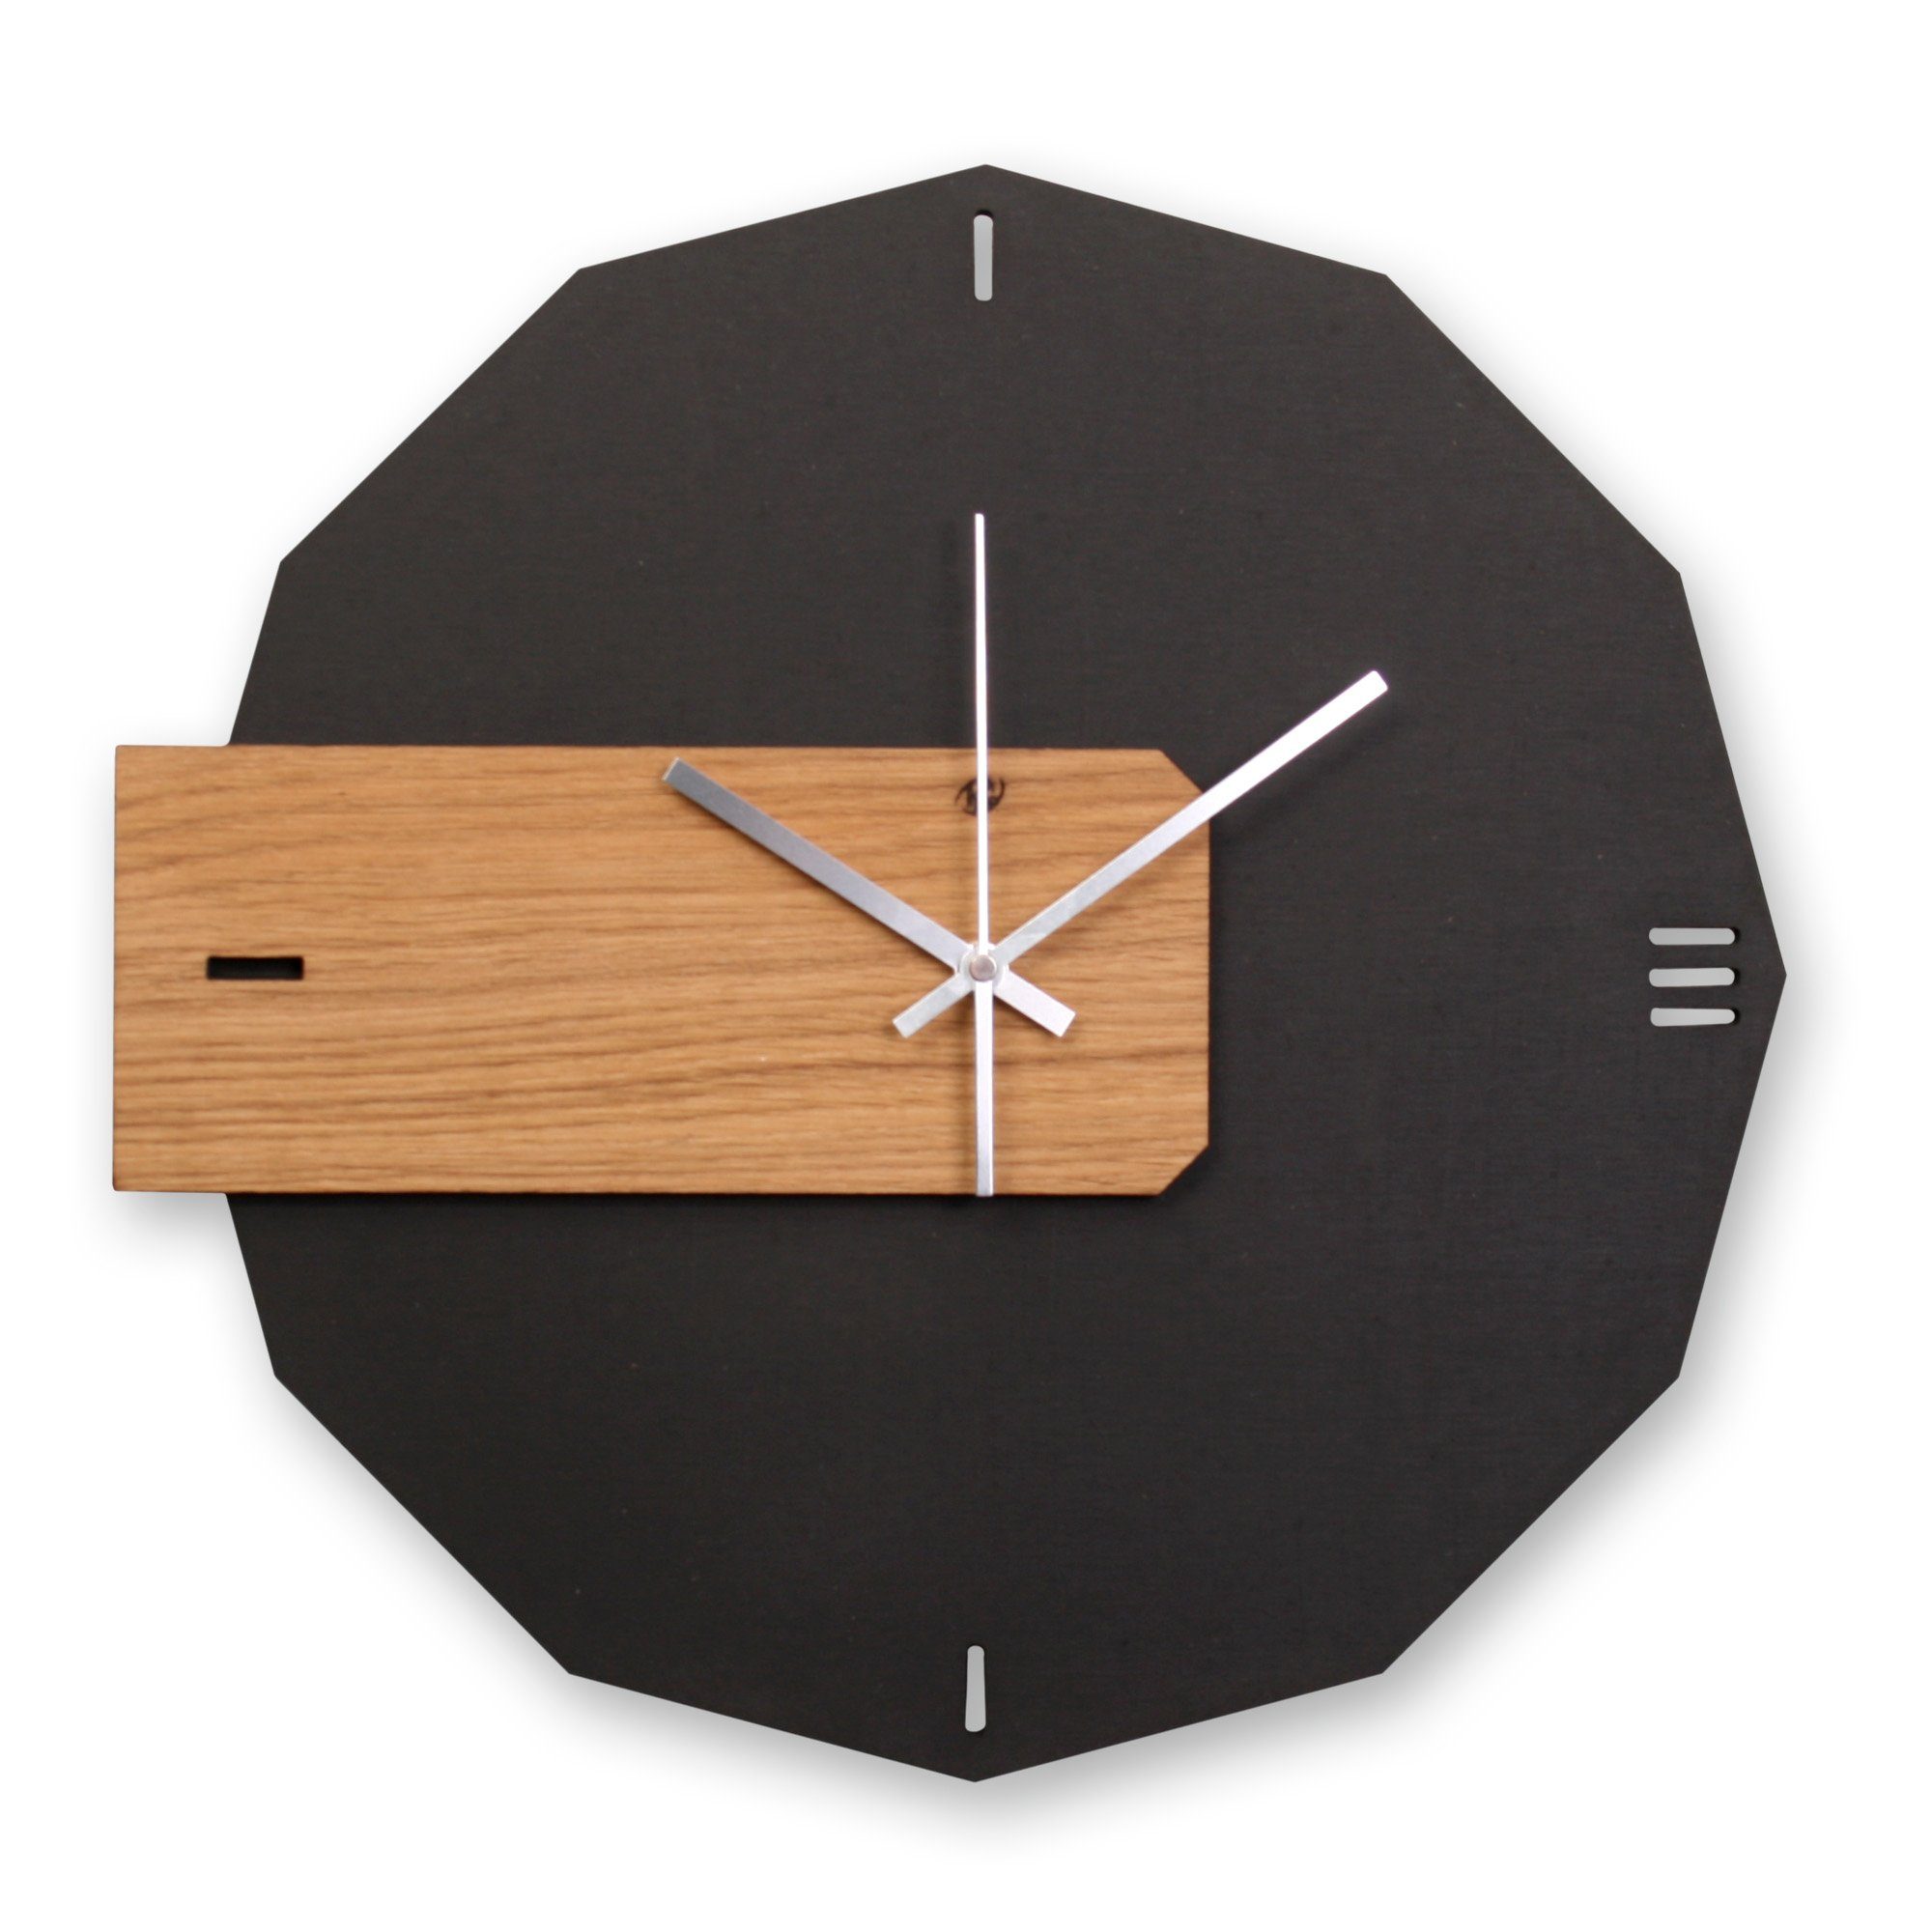 Display für Uhr, klein  Schwarzes Holz, hochglanz, mit Logodruck